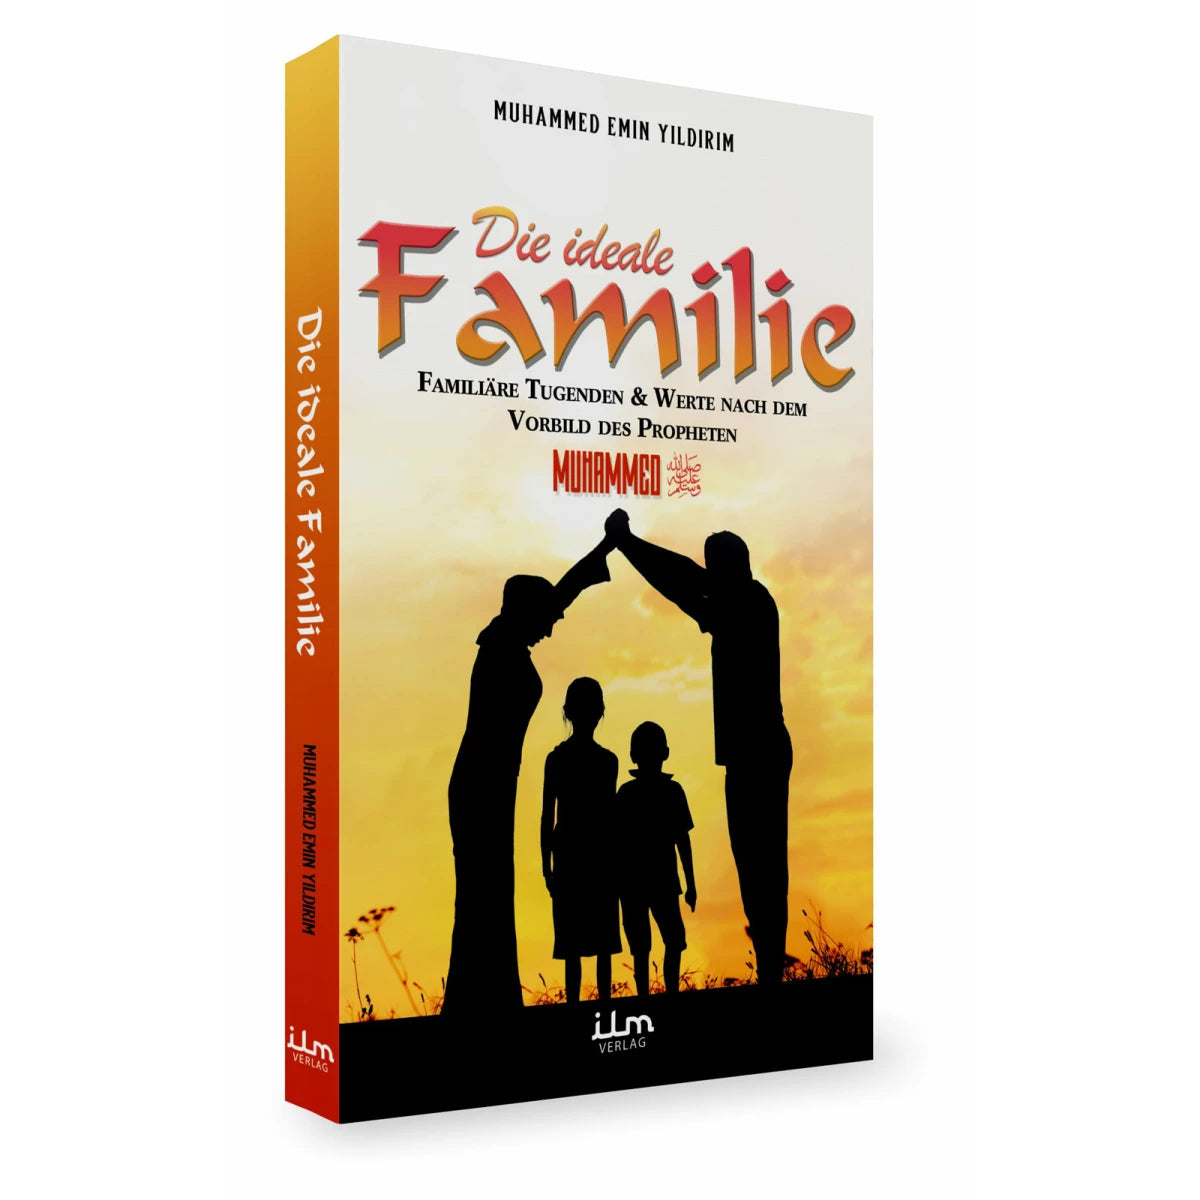 Die ideale Familie - familiäre Tugenden & Werte nach dem Vorbild des Propheten